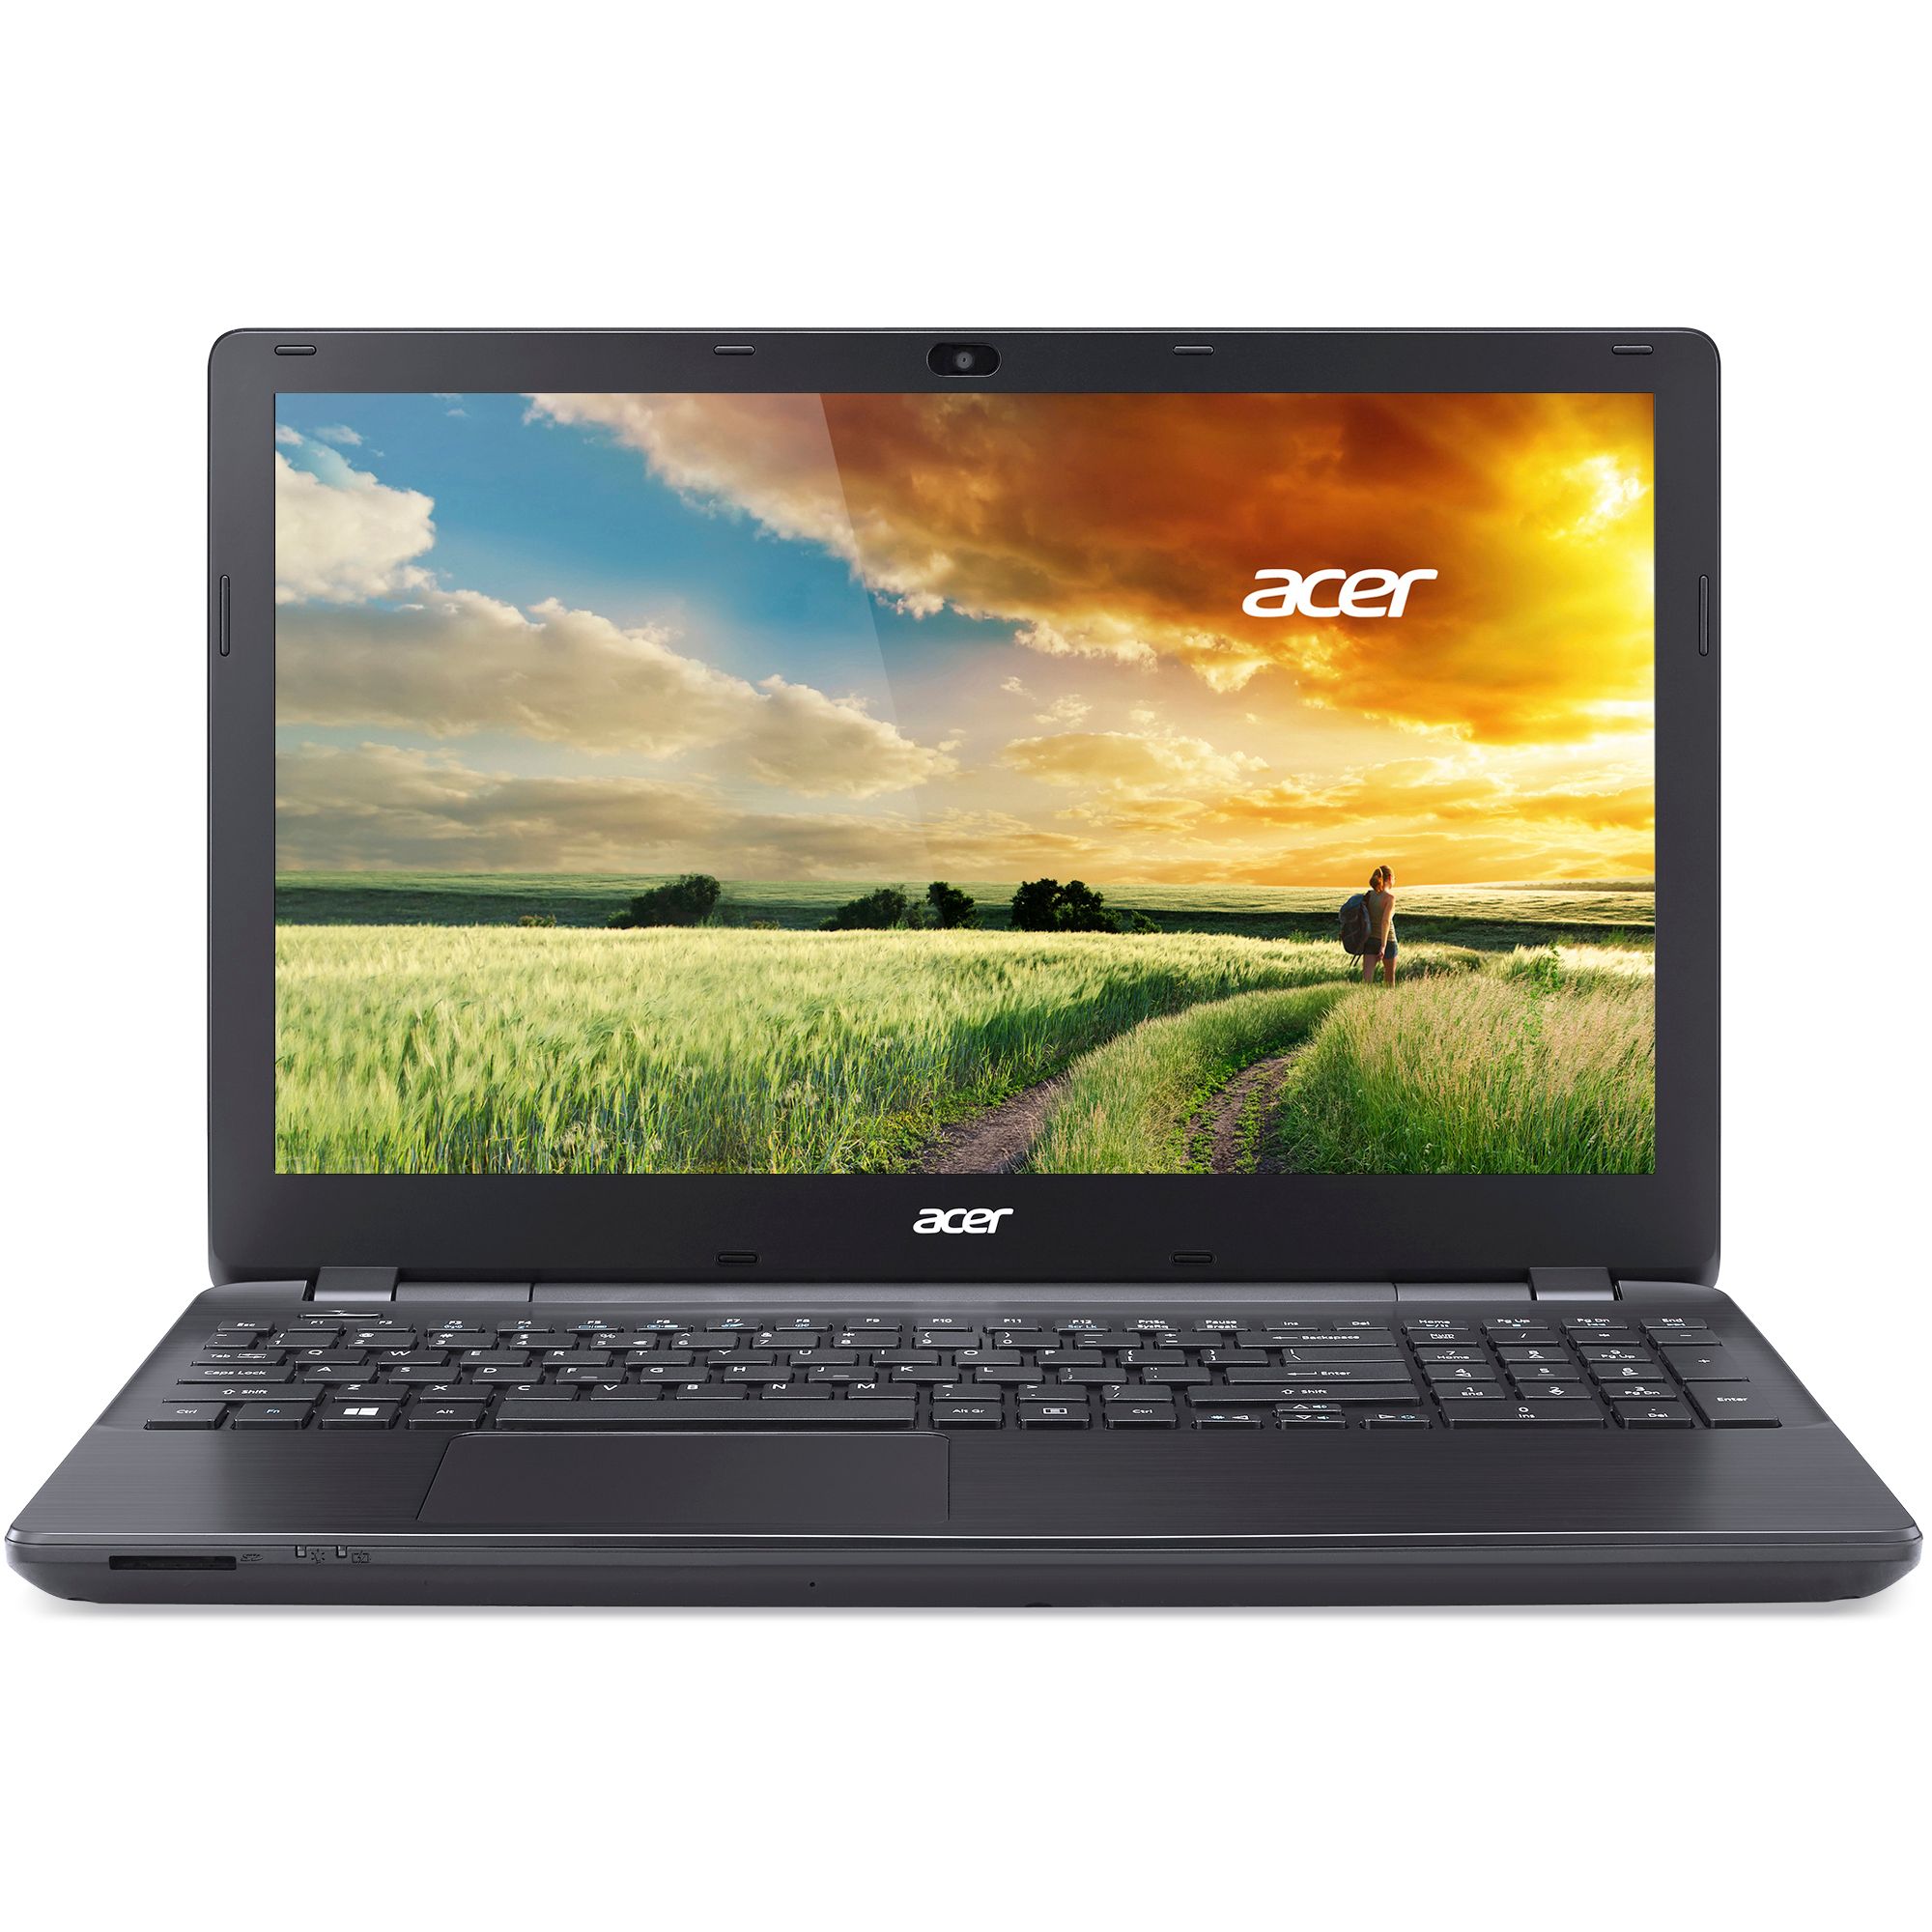 Laptop Acer Aspire E5-571, Intel Core i3-4005U 1.70GHz, 4GB DDR3, 500GB SATA, DVD-RW, 15.6 Inch, Tastatura Numerica, Webcam